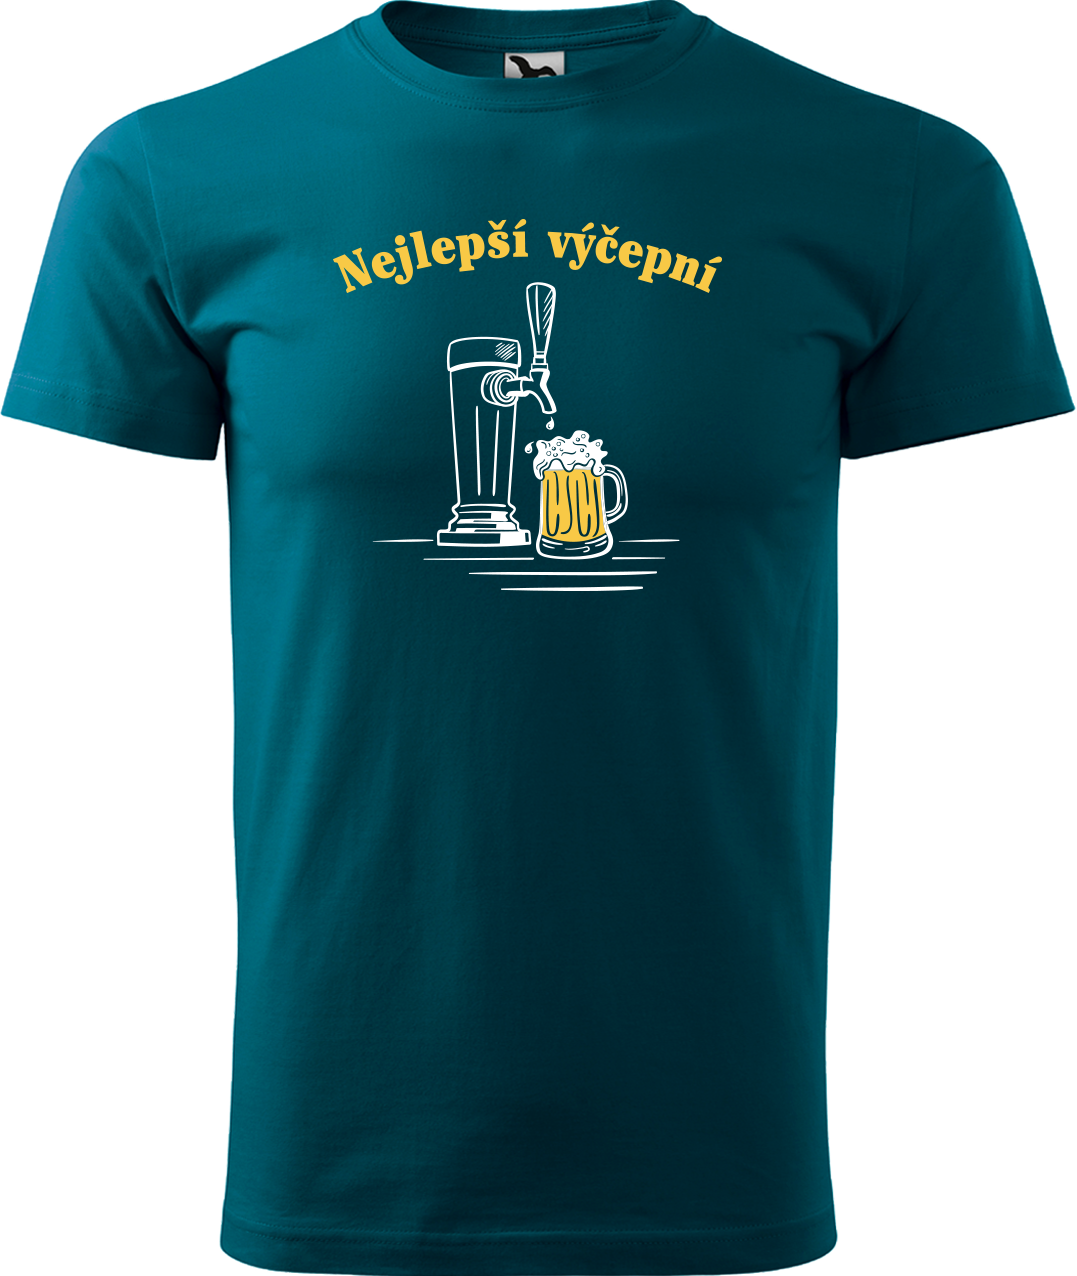 Pivní tričko - Nejlepší výčepní Velikost: S, Barva: Petrolejová (93)